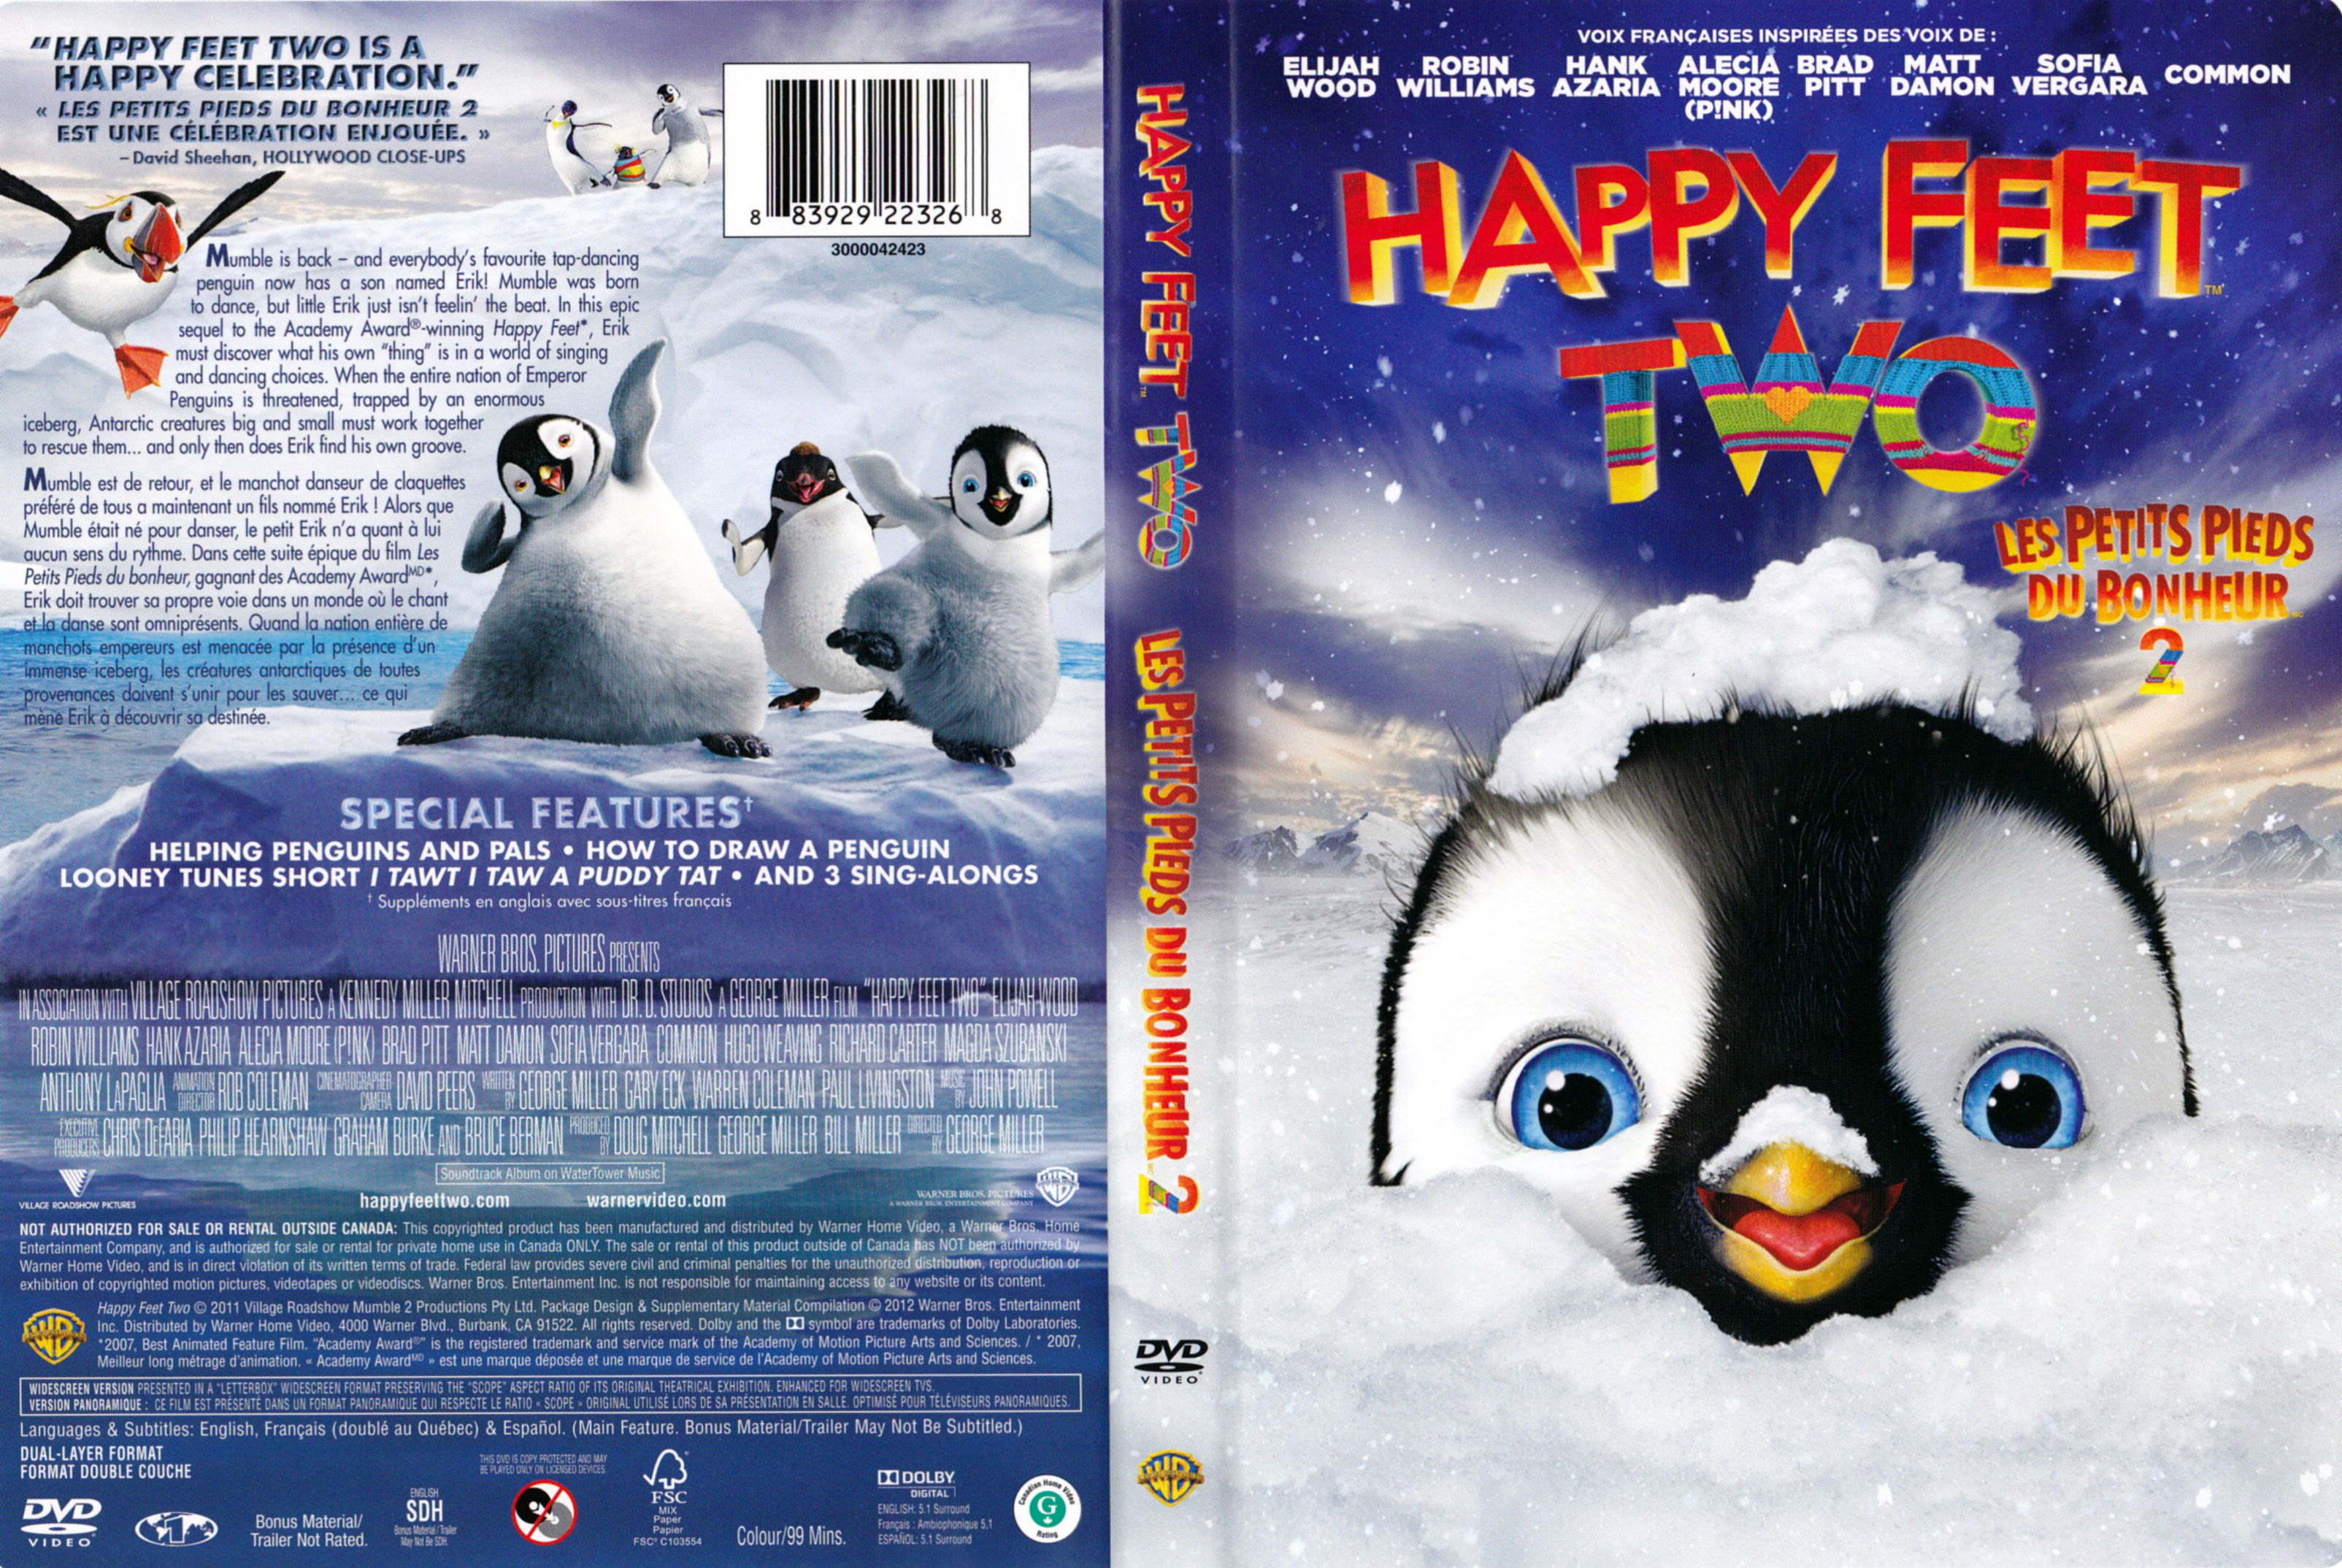 Jaquette DVD Les petits pieds du bonheur 2 - Happy feet 2 (Canadienne)